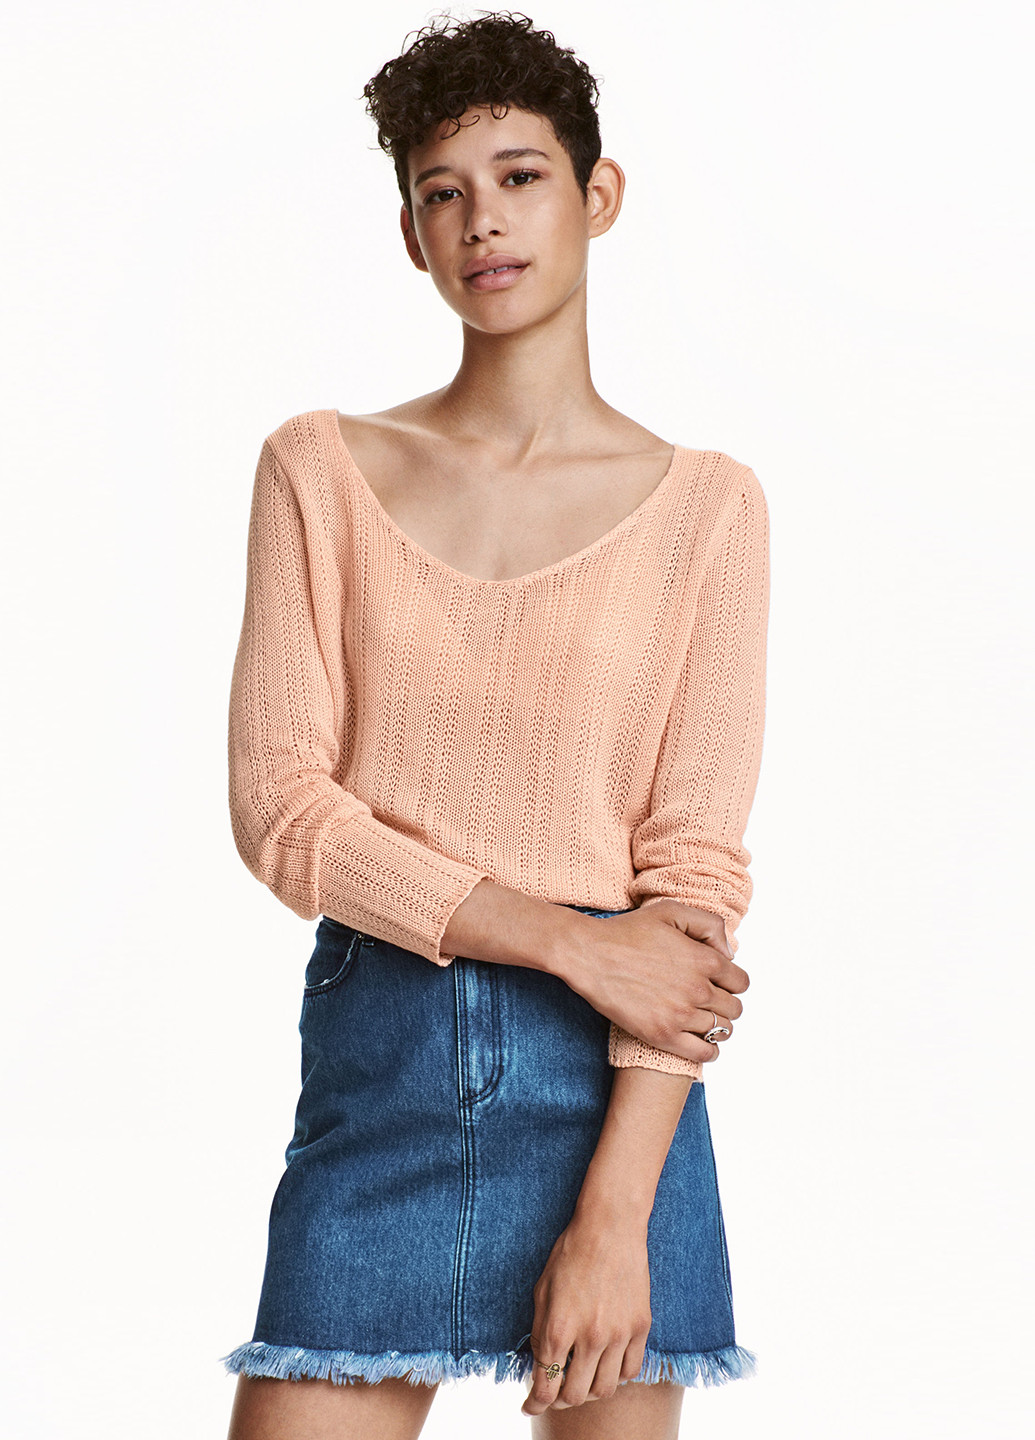 Персиковый демисезонный пуловер пуловер H&M